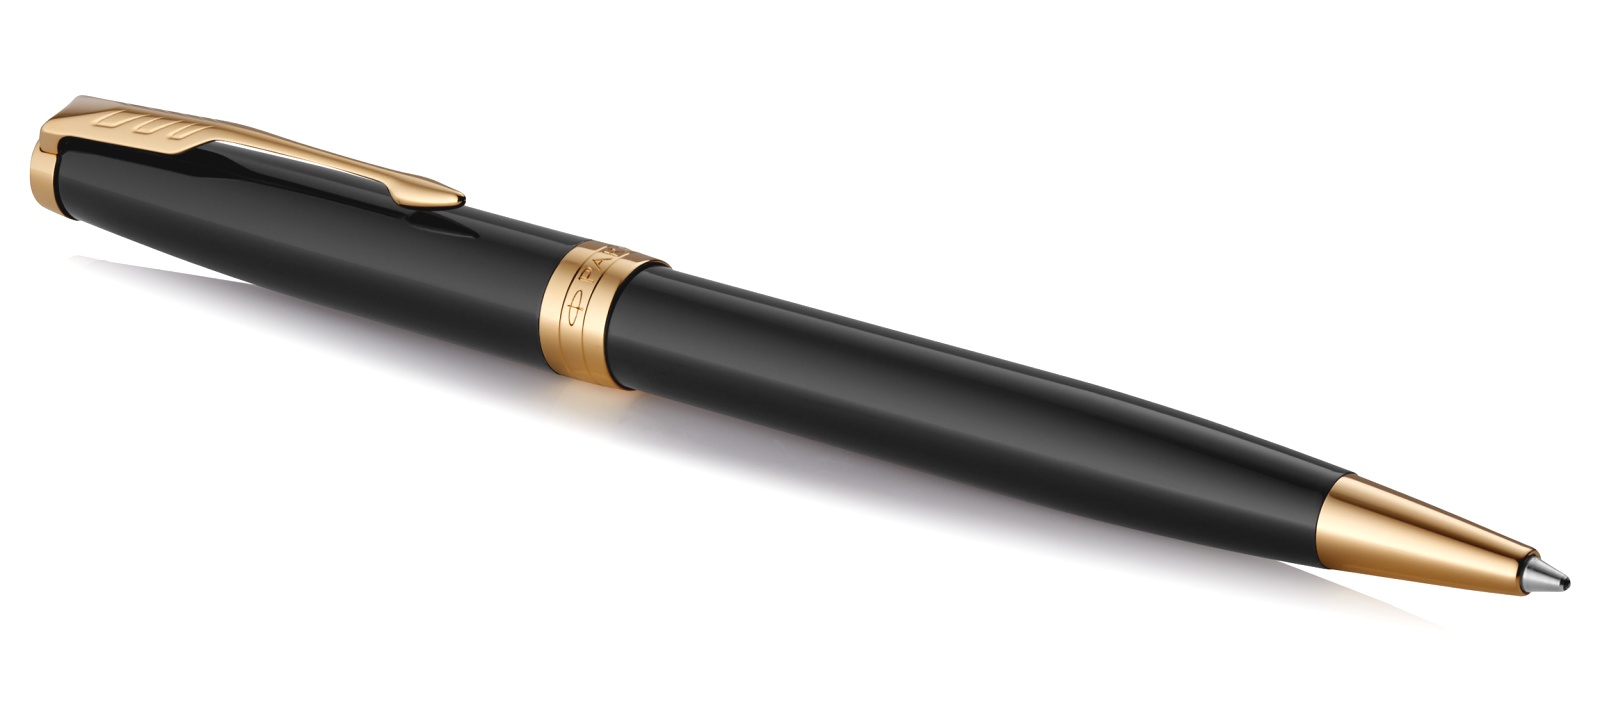  Шариковая ручка Parker Sonnet Core K530, Lacquer Deep Black GT, фото 2